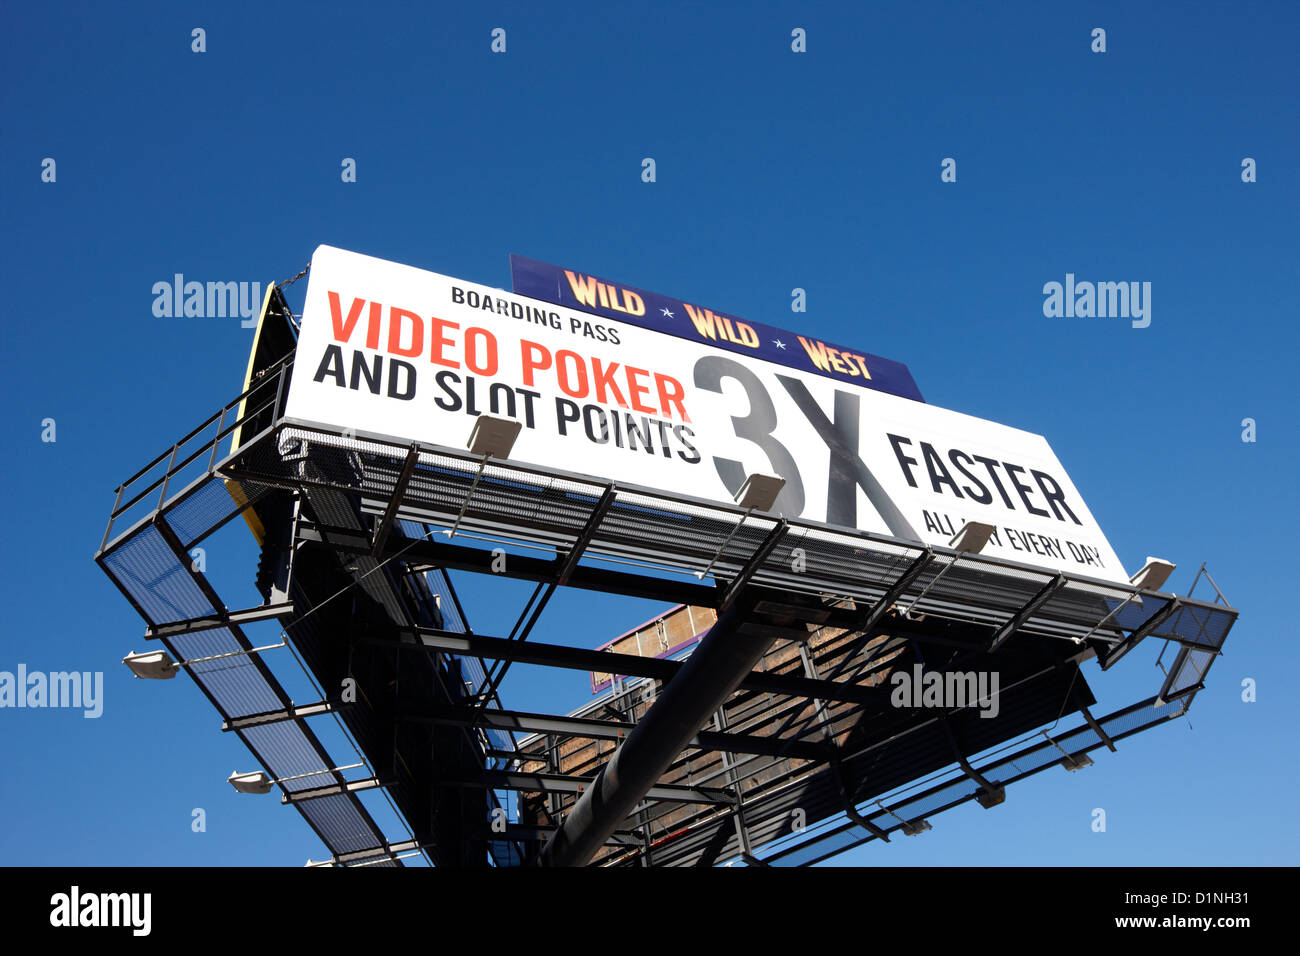 Sobrecarga de vallas publicitarias de alto nivel gantry Las Vegas Nevada EE.UU. Foto de stock